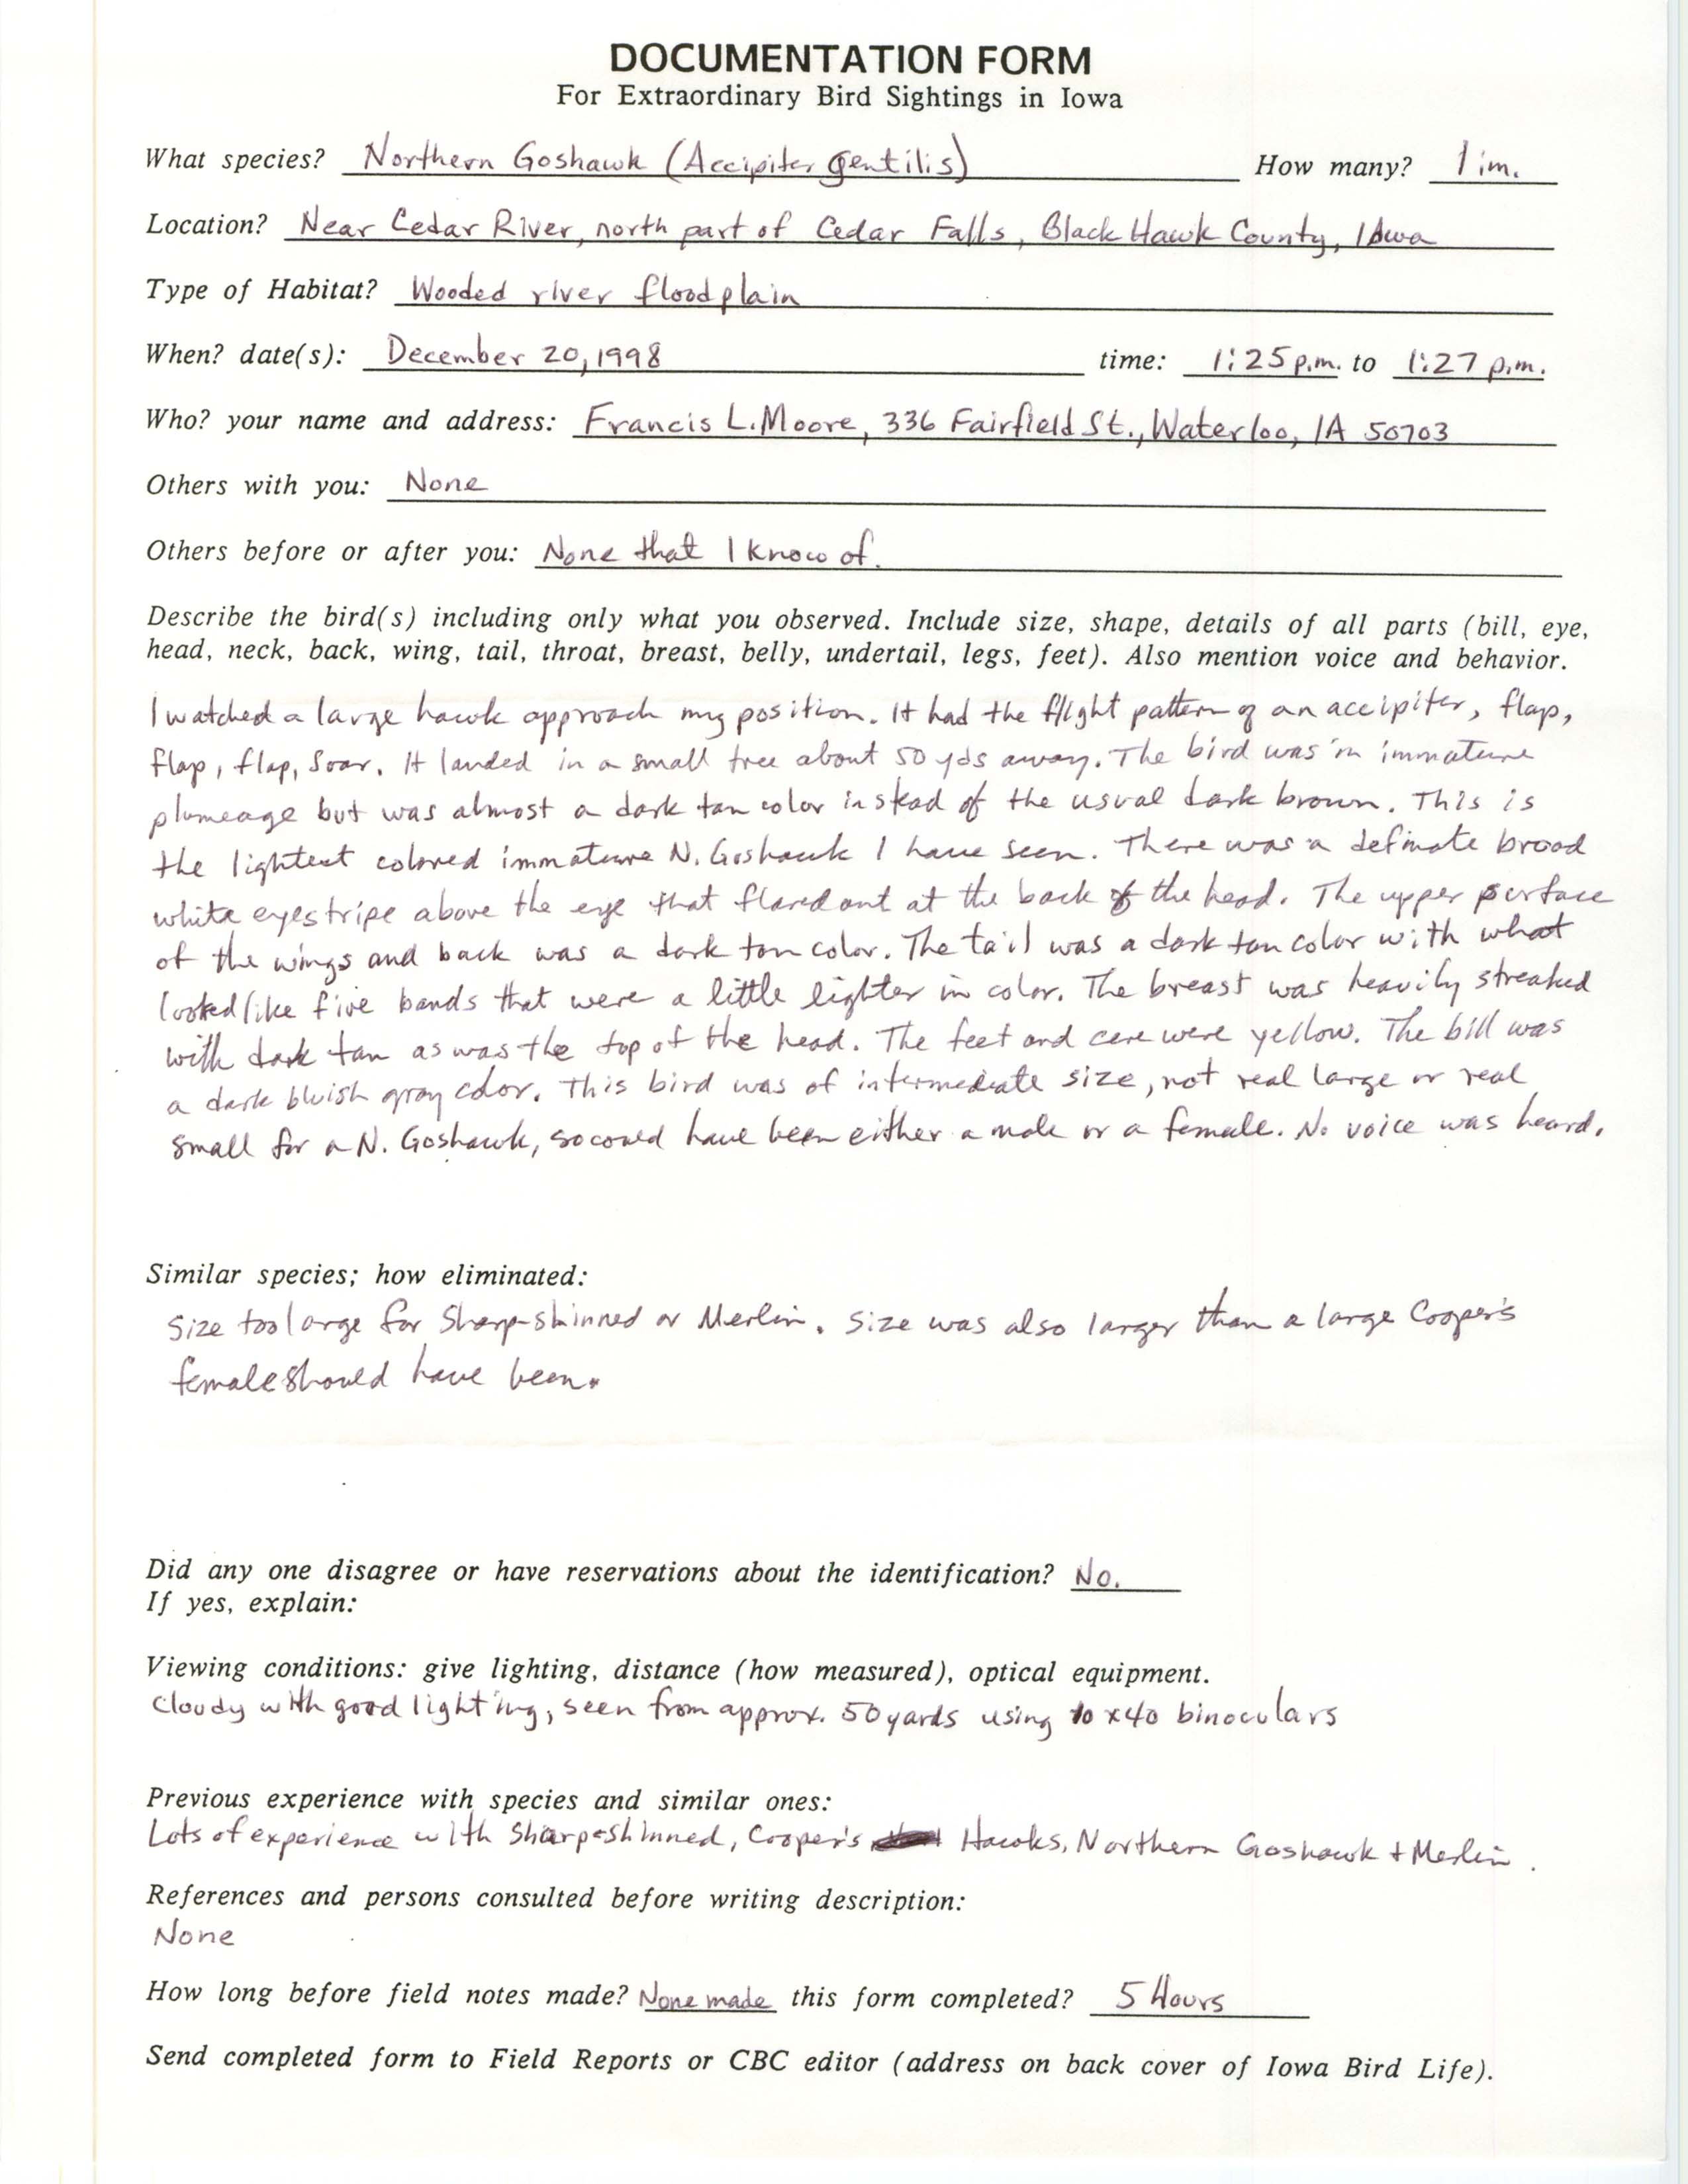 Rare bird documentation form for Northern Goshawk at Cedar Falls, 1998